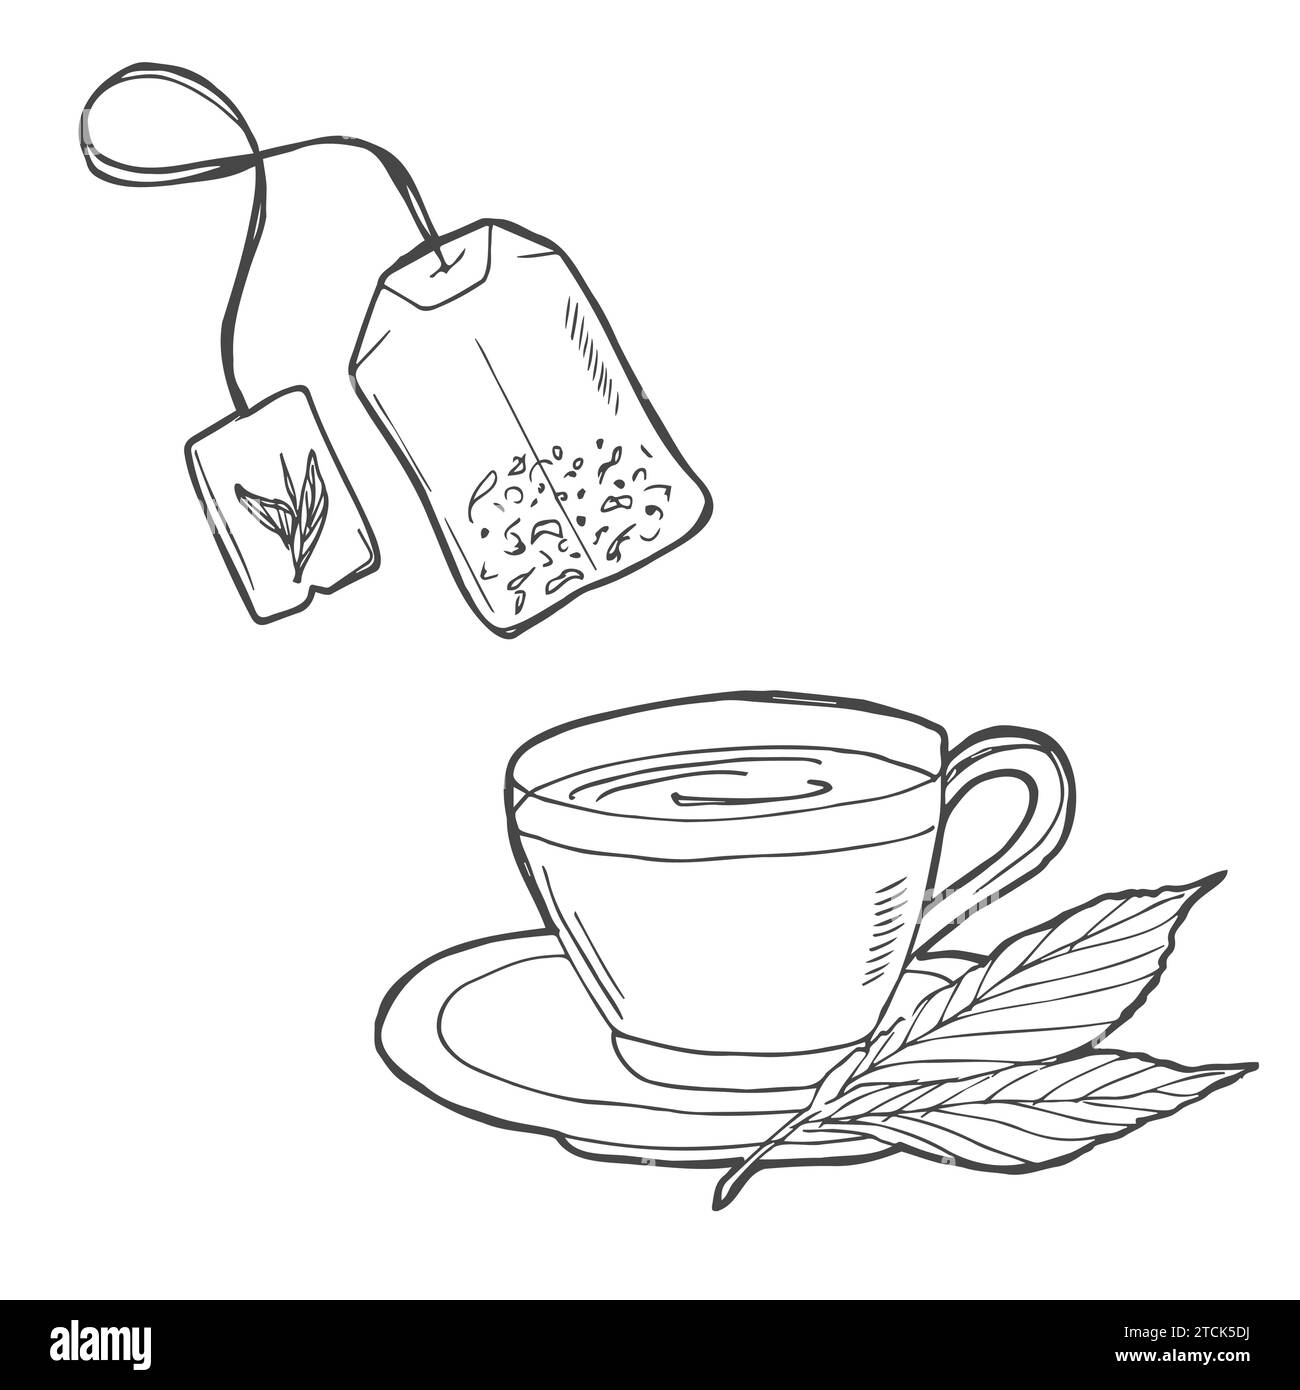 Tasse mit Teebeutel, handgezeichneter Umrisskontur. Heißgetränk - Illustration von Teetassen-Vektorskizzen für Druck-, Web-, Mobile- und Infografiken isoliert Stock Vektor